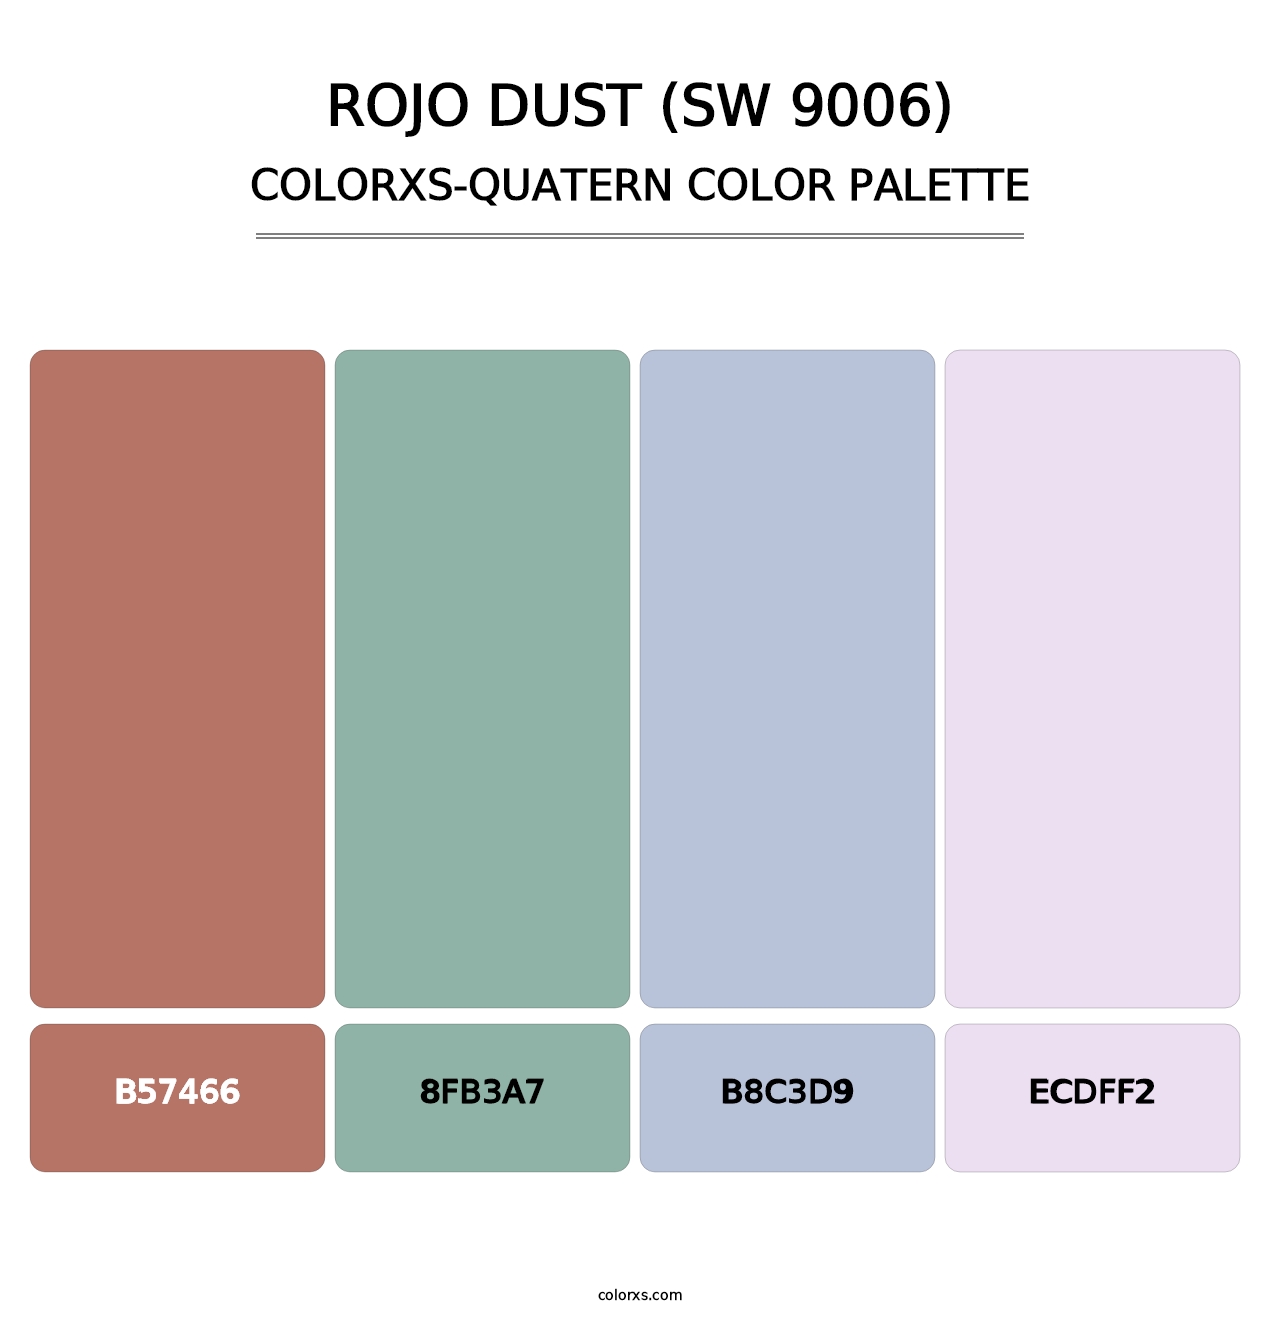 Rojo Dust (SW 9006) - Colorxs Quatern Palette